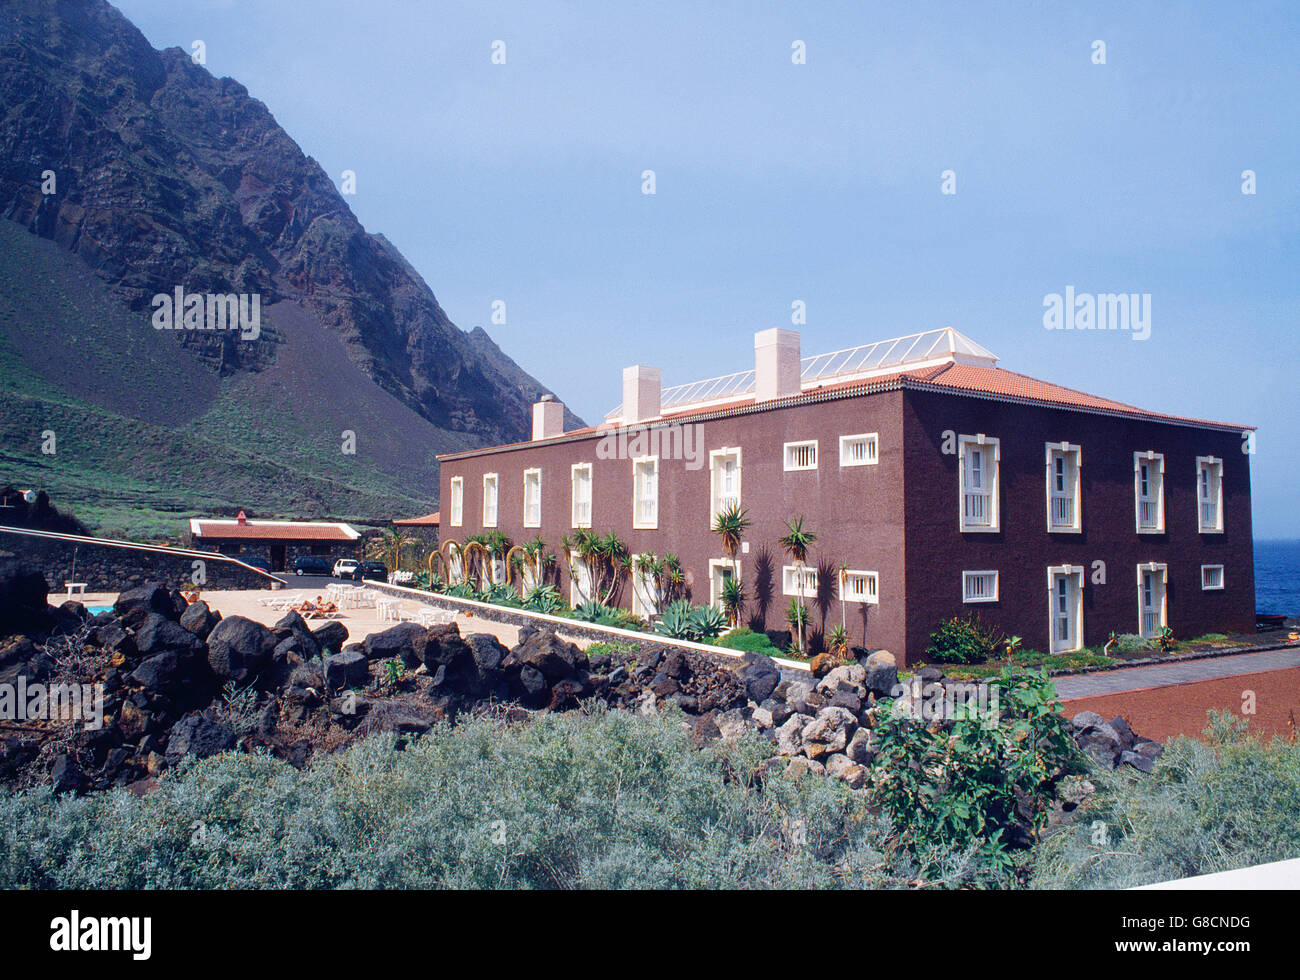 Pozo de la Salud Spa Hotel. Sabinosa, El Hierro island, Canary Islands, Spain. Stock Photo